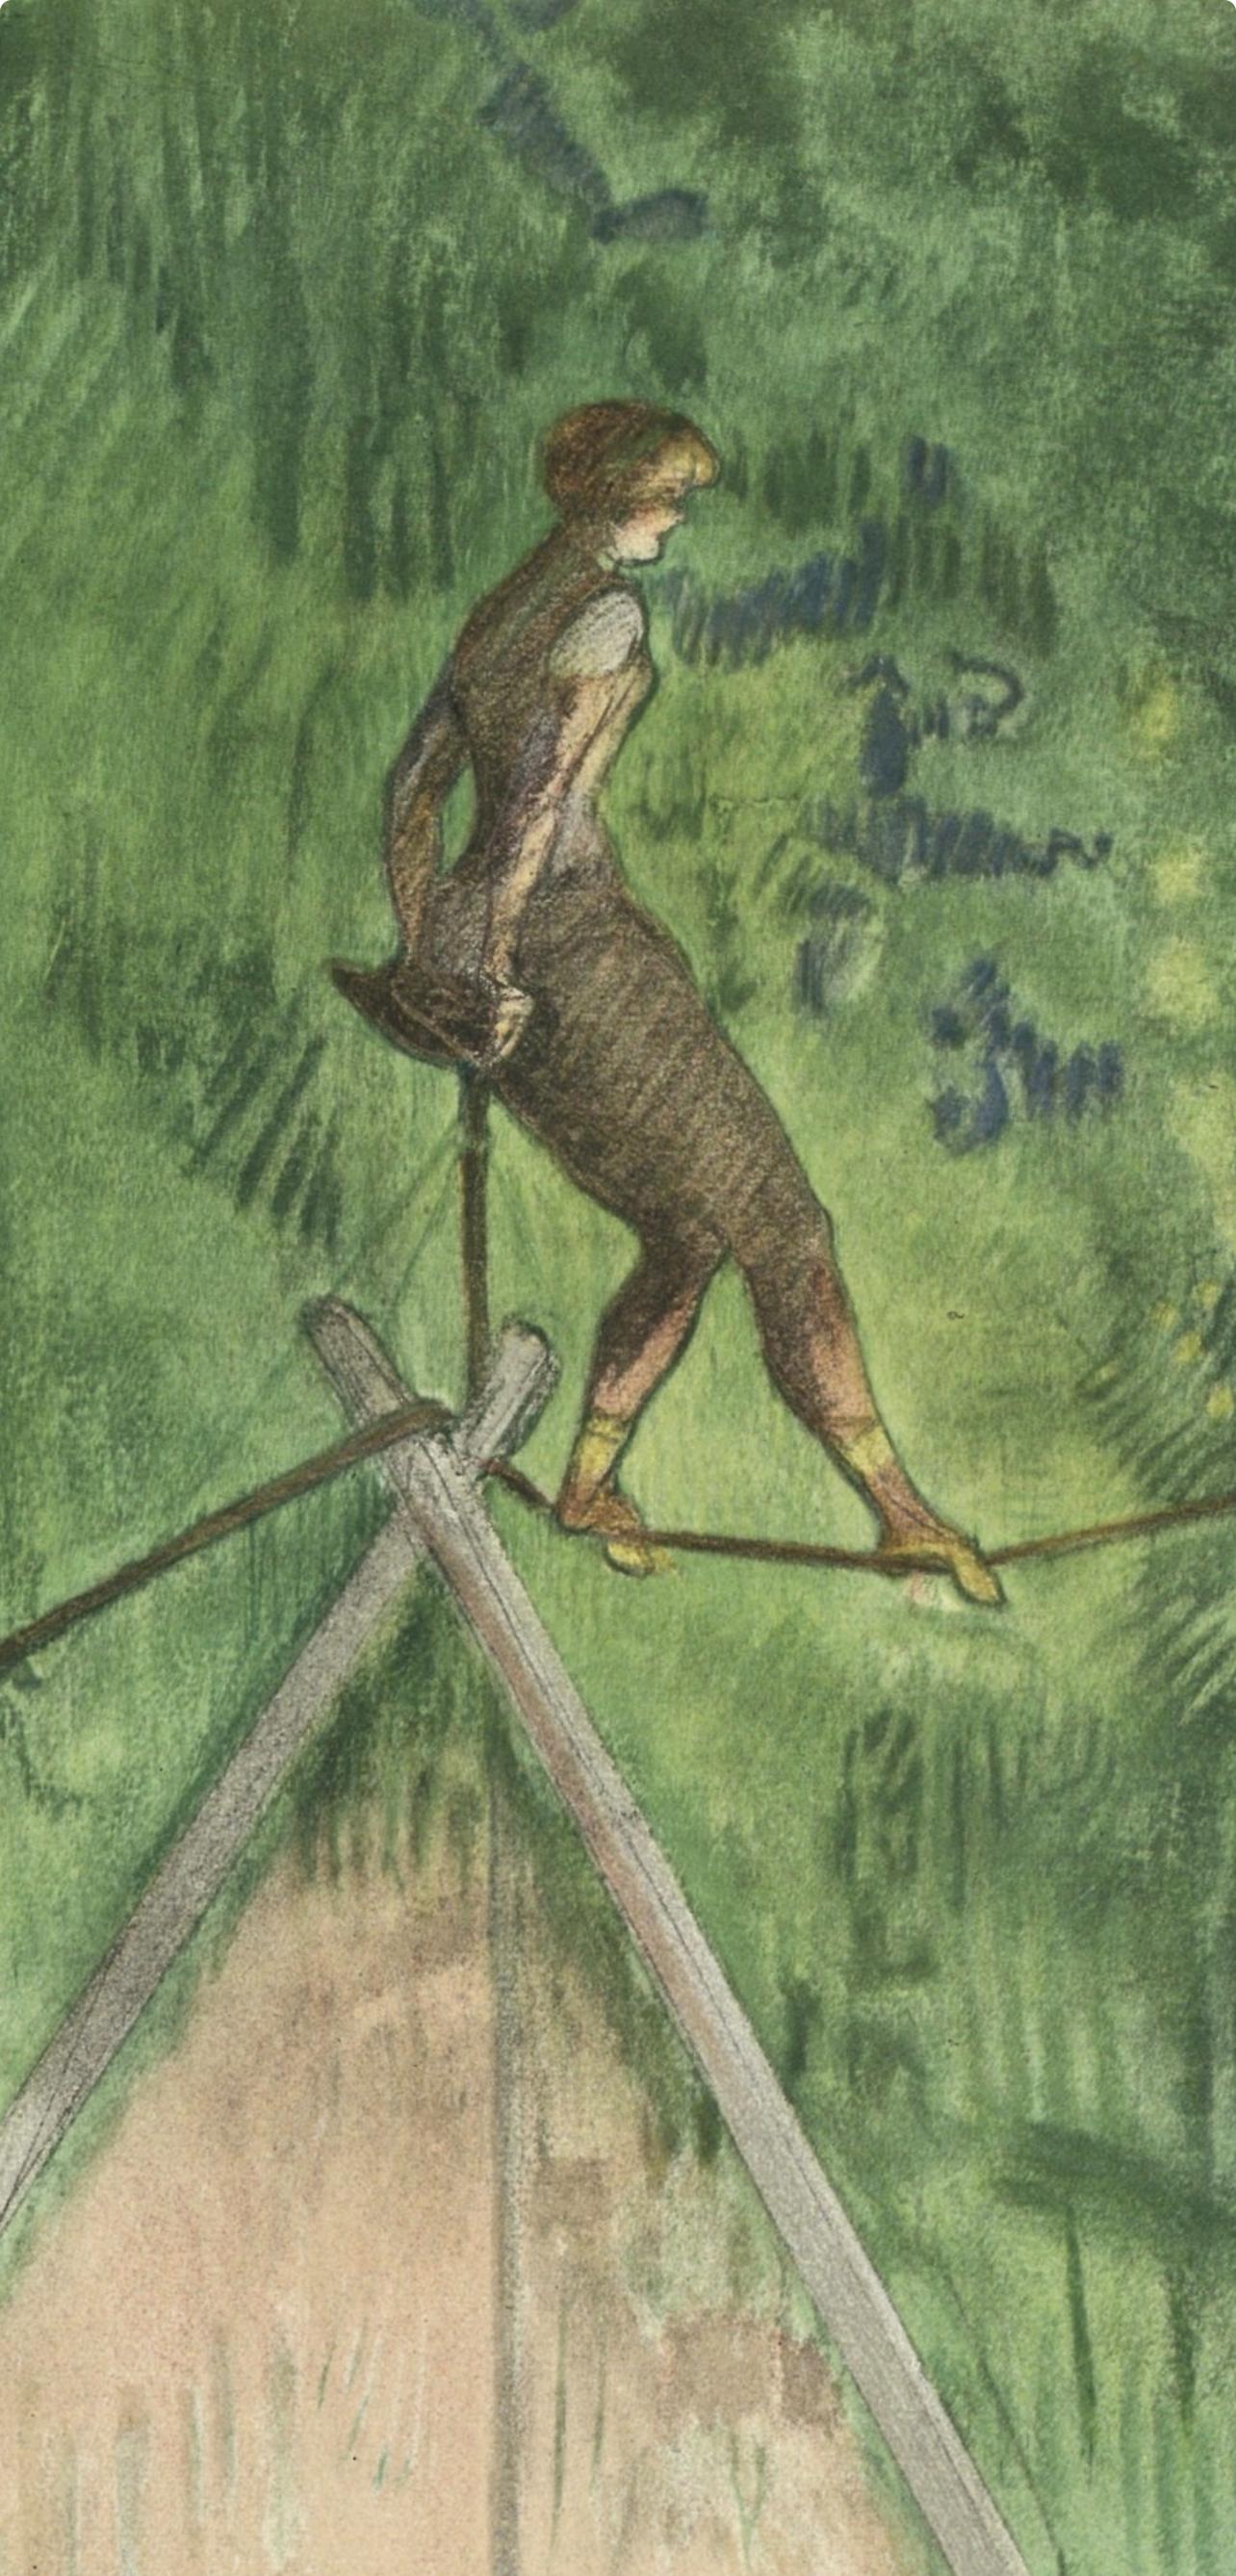 Toulouse-Lautrec, Danseuse de corde, Le cirque de Toulouse-Lautrec (après) - Print de Henri de Toulouse-Lautrec